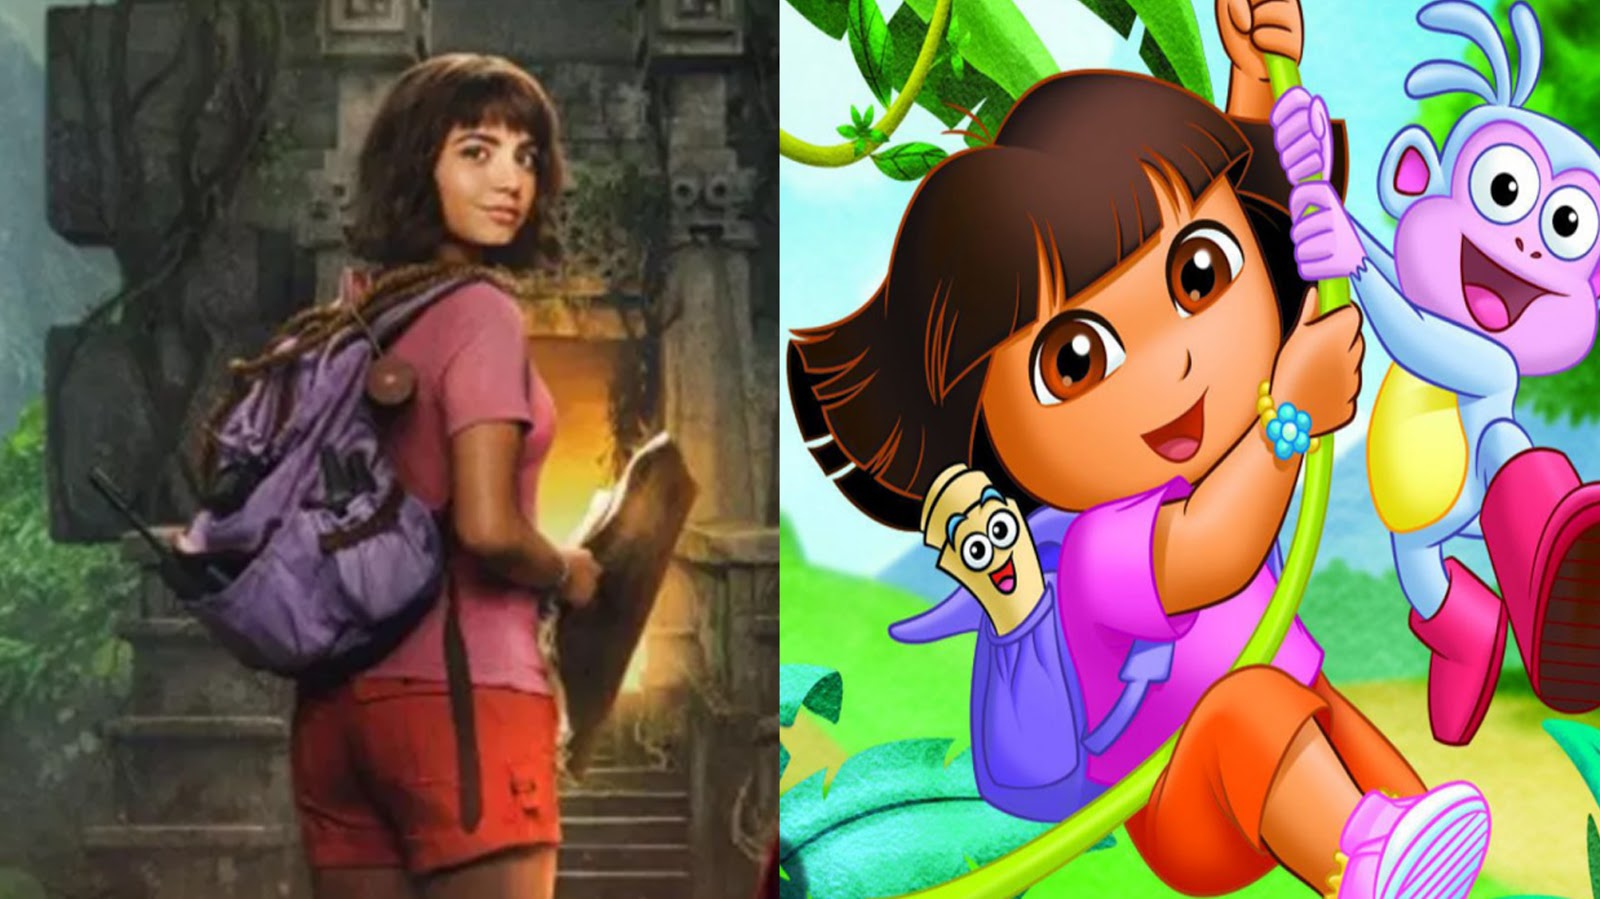 兒童教育卡通 愛探險的dora 真人電影主角確定 女角身材這麼好沒問題嗎 Yahoo奇摩電影